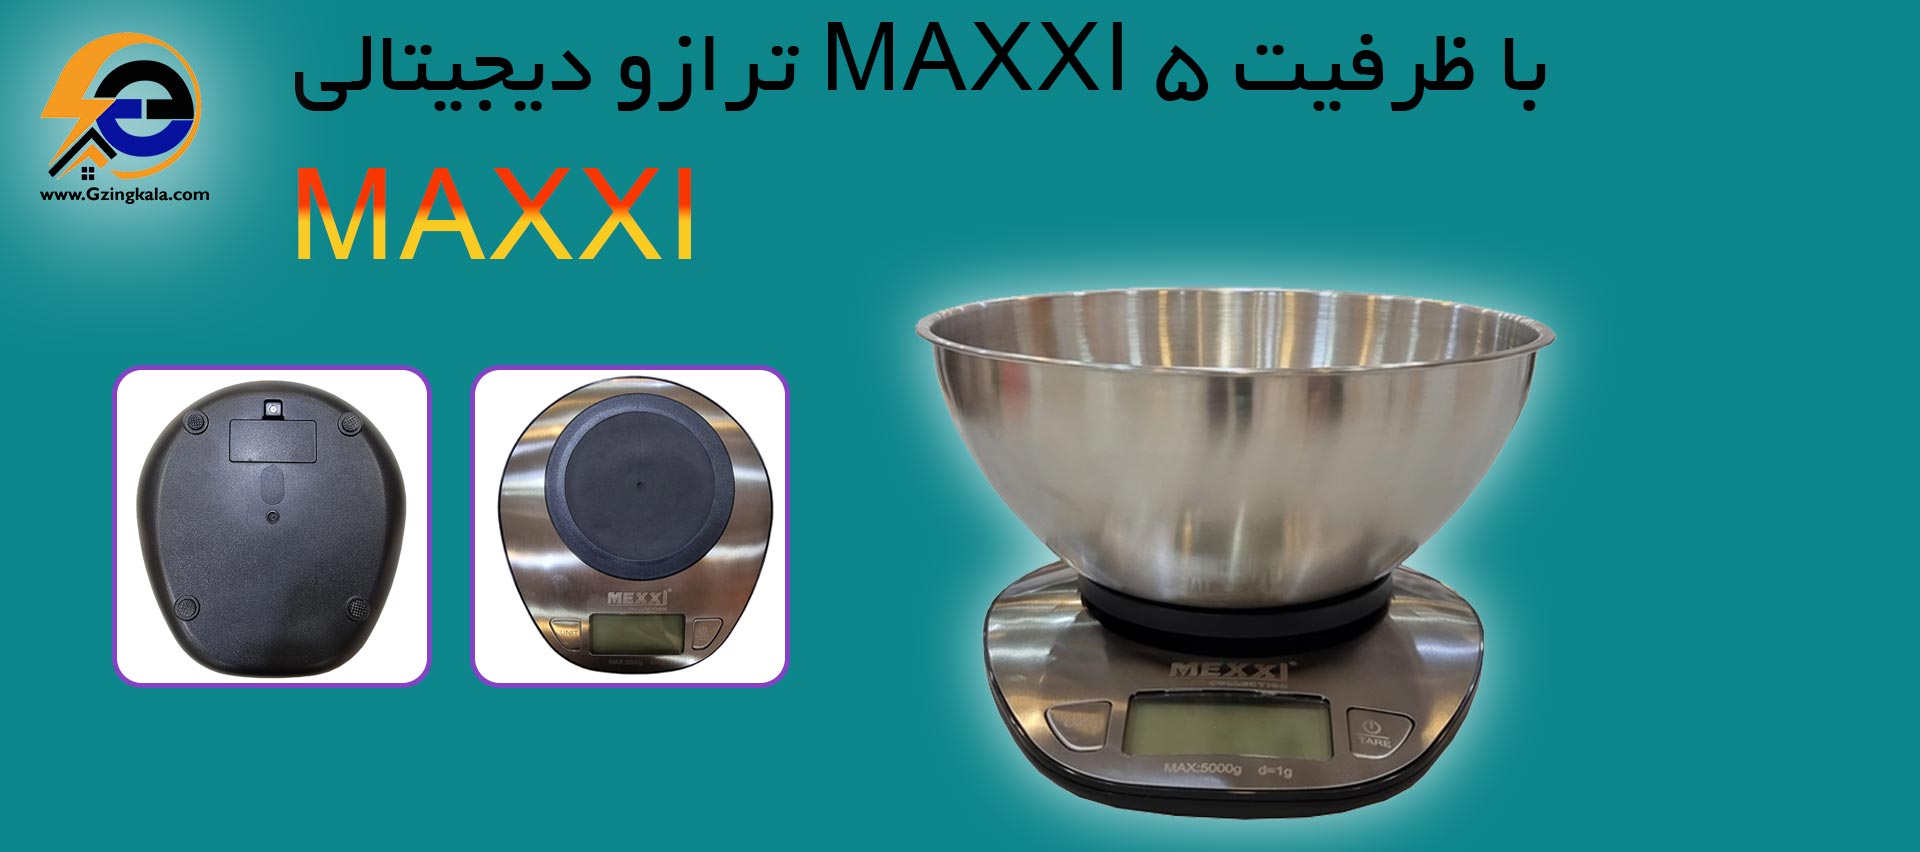 ترازو دیجیتالی MAXXI با ظرفیت 5 کیلوگرم